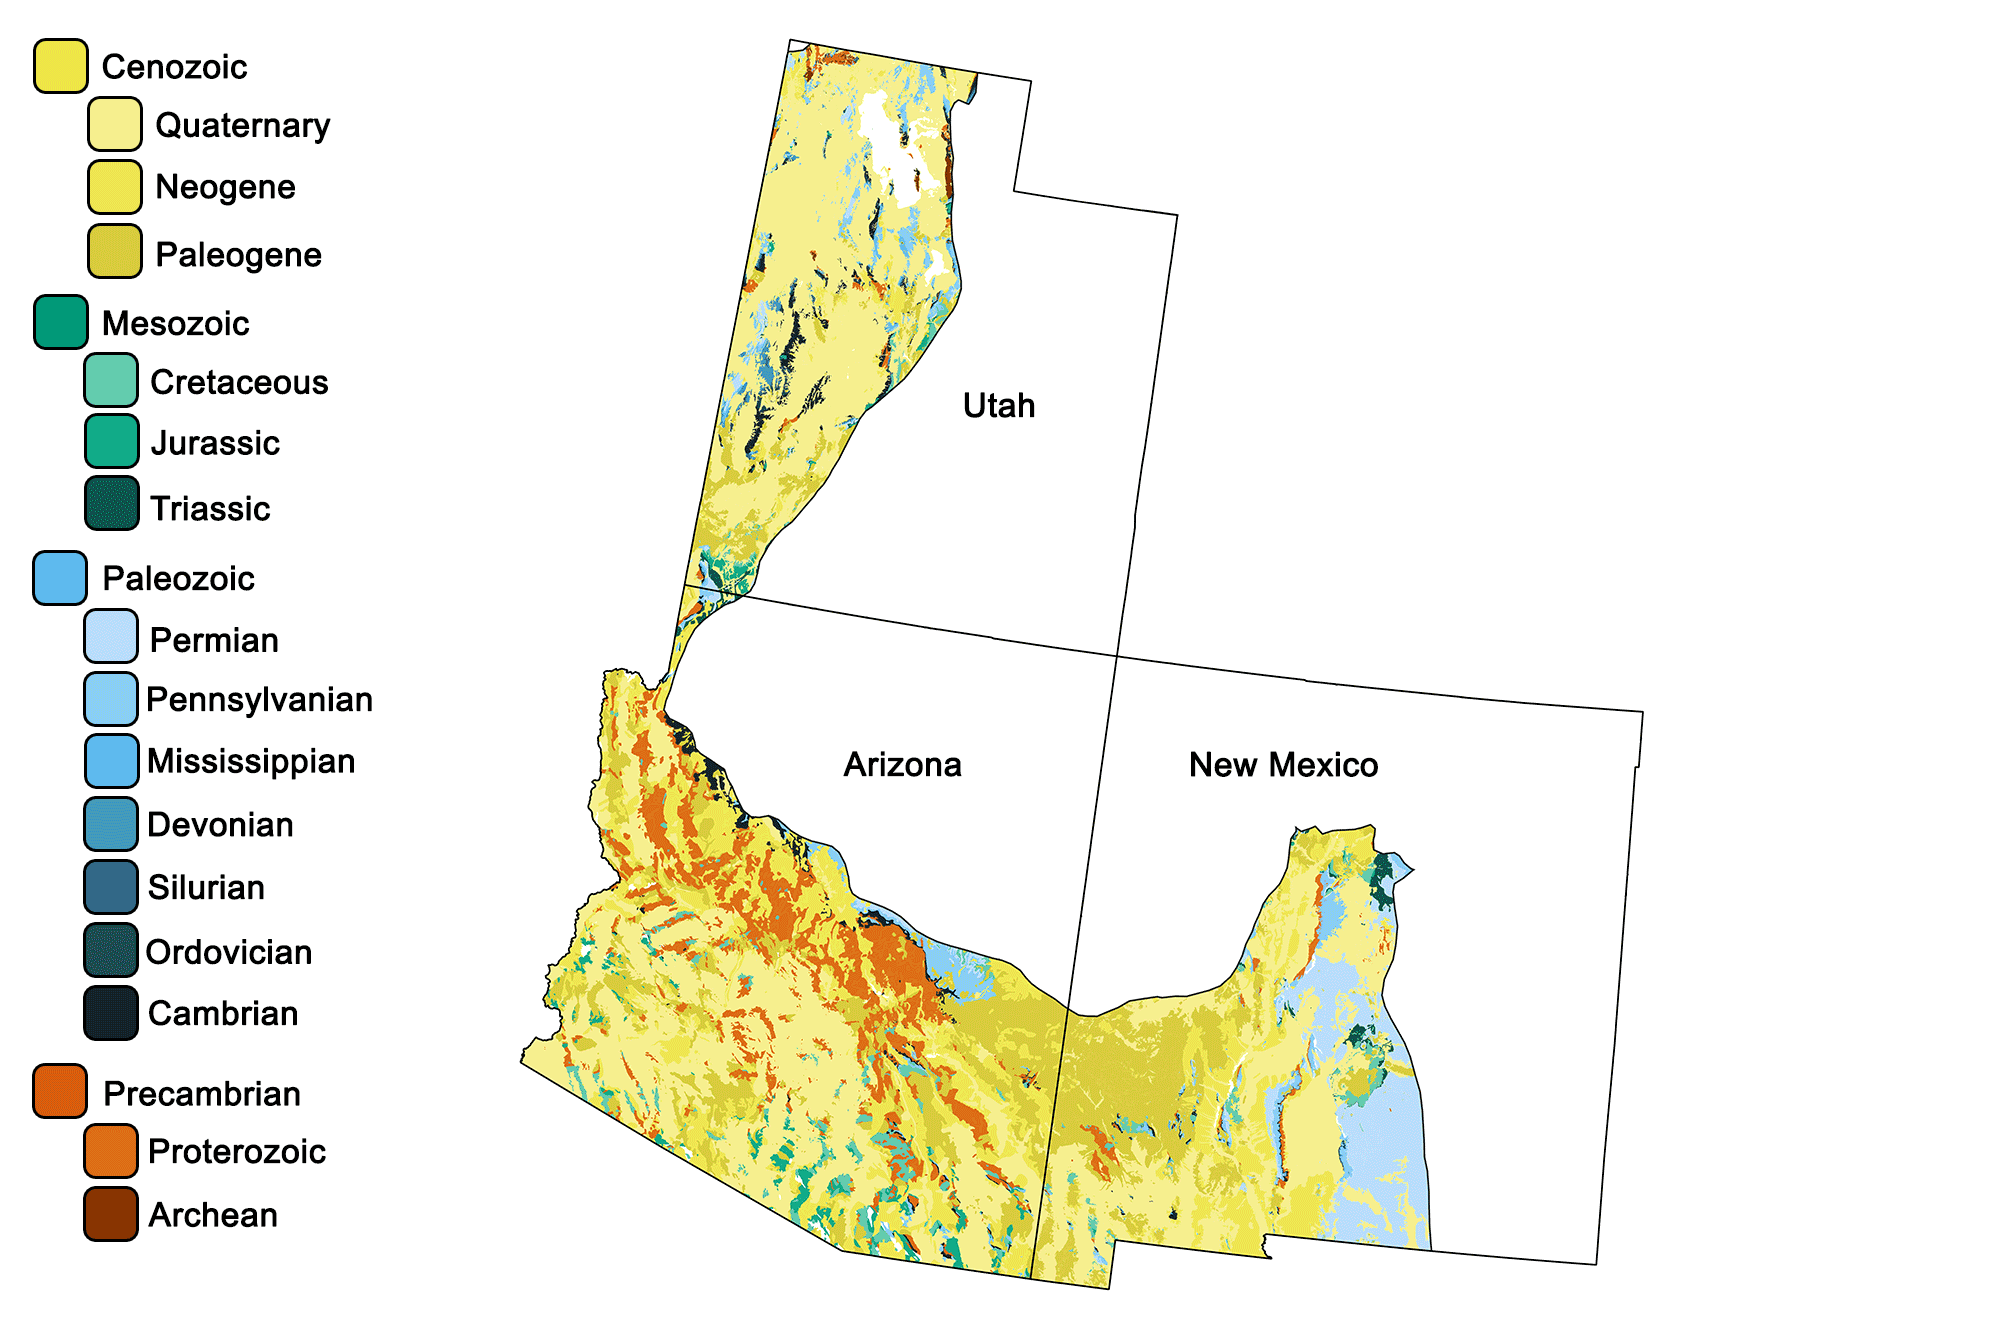 Geologic map of the Basin and Range region of the southwestern United States.